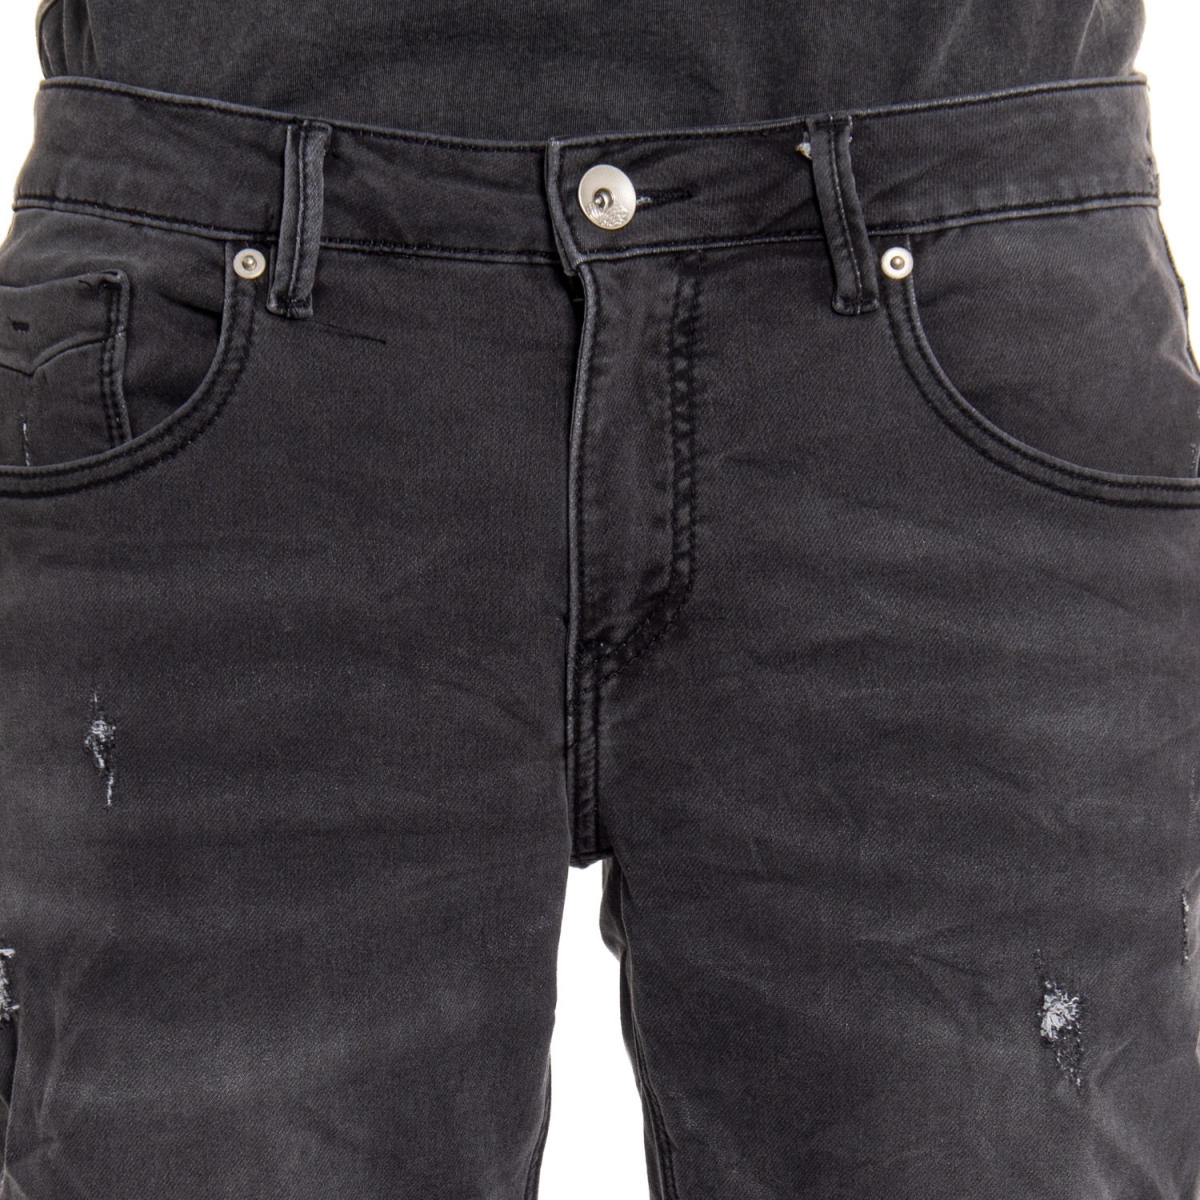 Kleidung Jeans mann Jeans LPC508 LANDEK PARK Cafedelmar Shop